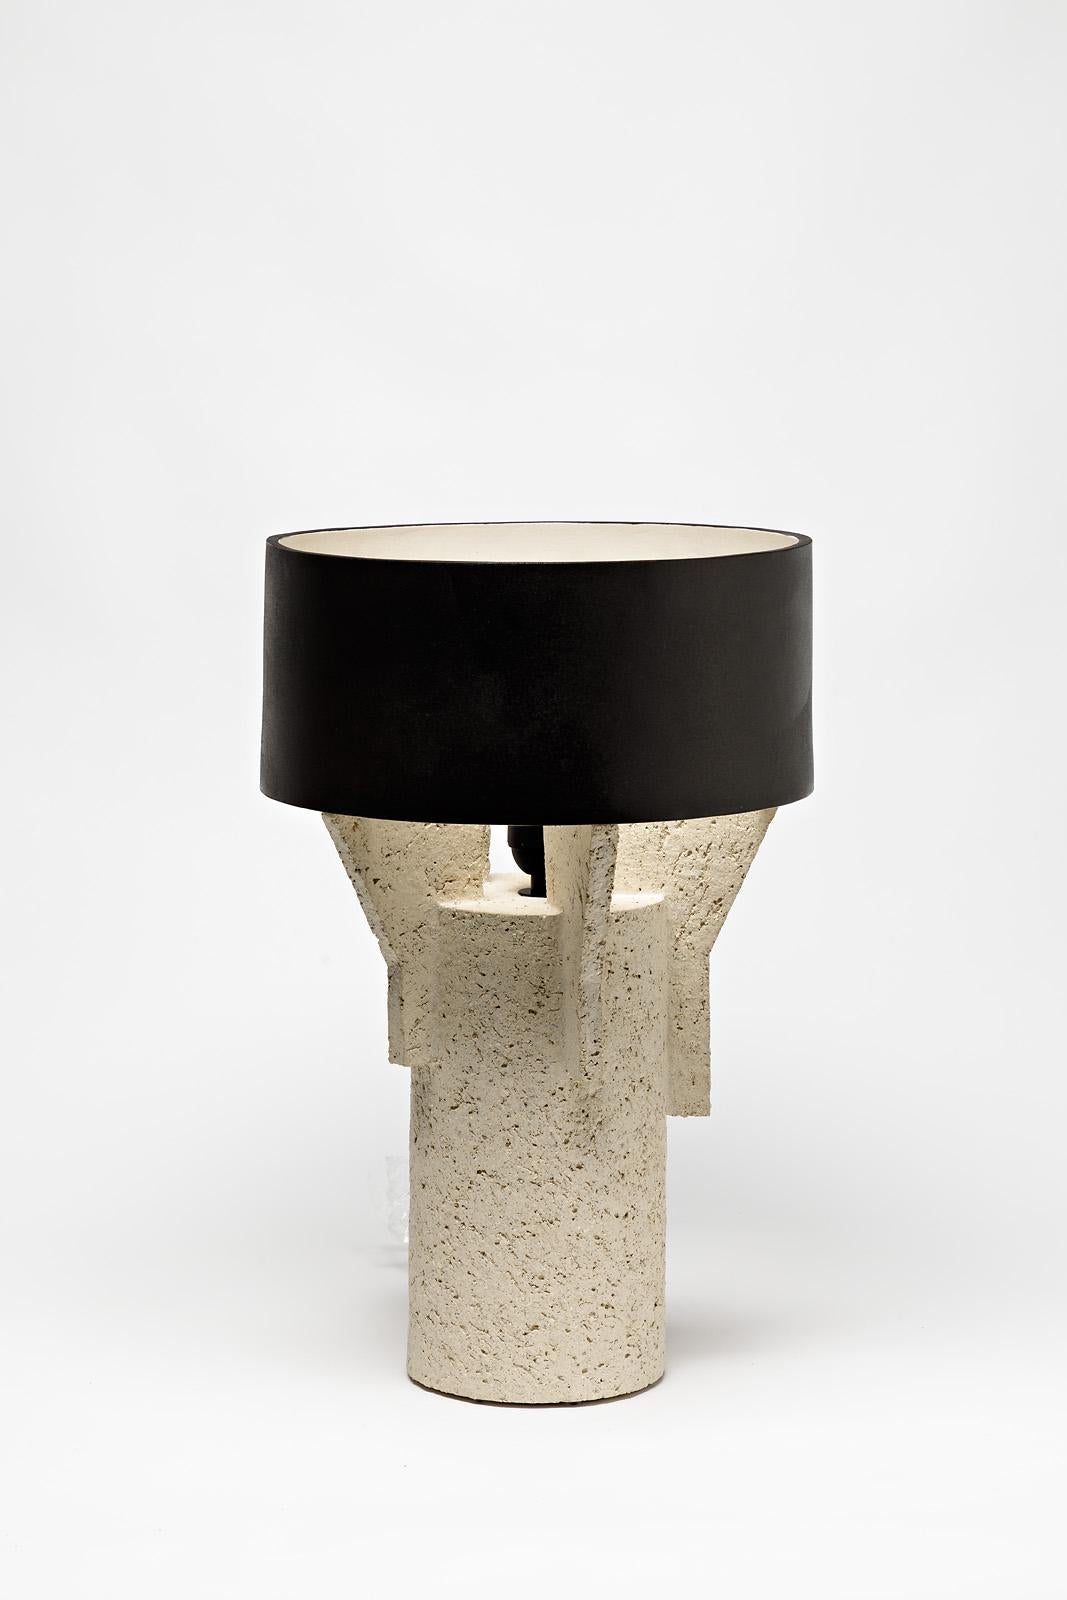 Ein Paar Keramik-Tischlampen von Denis Castaing mit brauner Glasur.
Der Sockel und der Lampenschirm sind aus Keramik.
Wird mit einer europäischen elektrischen Anlage verkauft.
Perfekter Originalzustand.
2019.
Unter dem Sockel signiert.
 